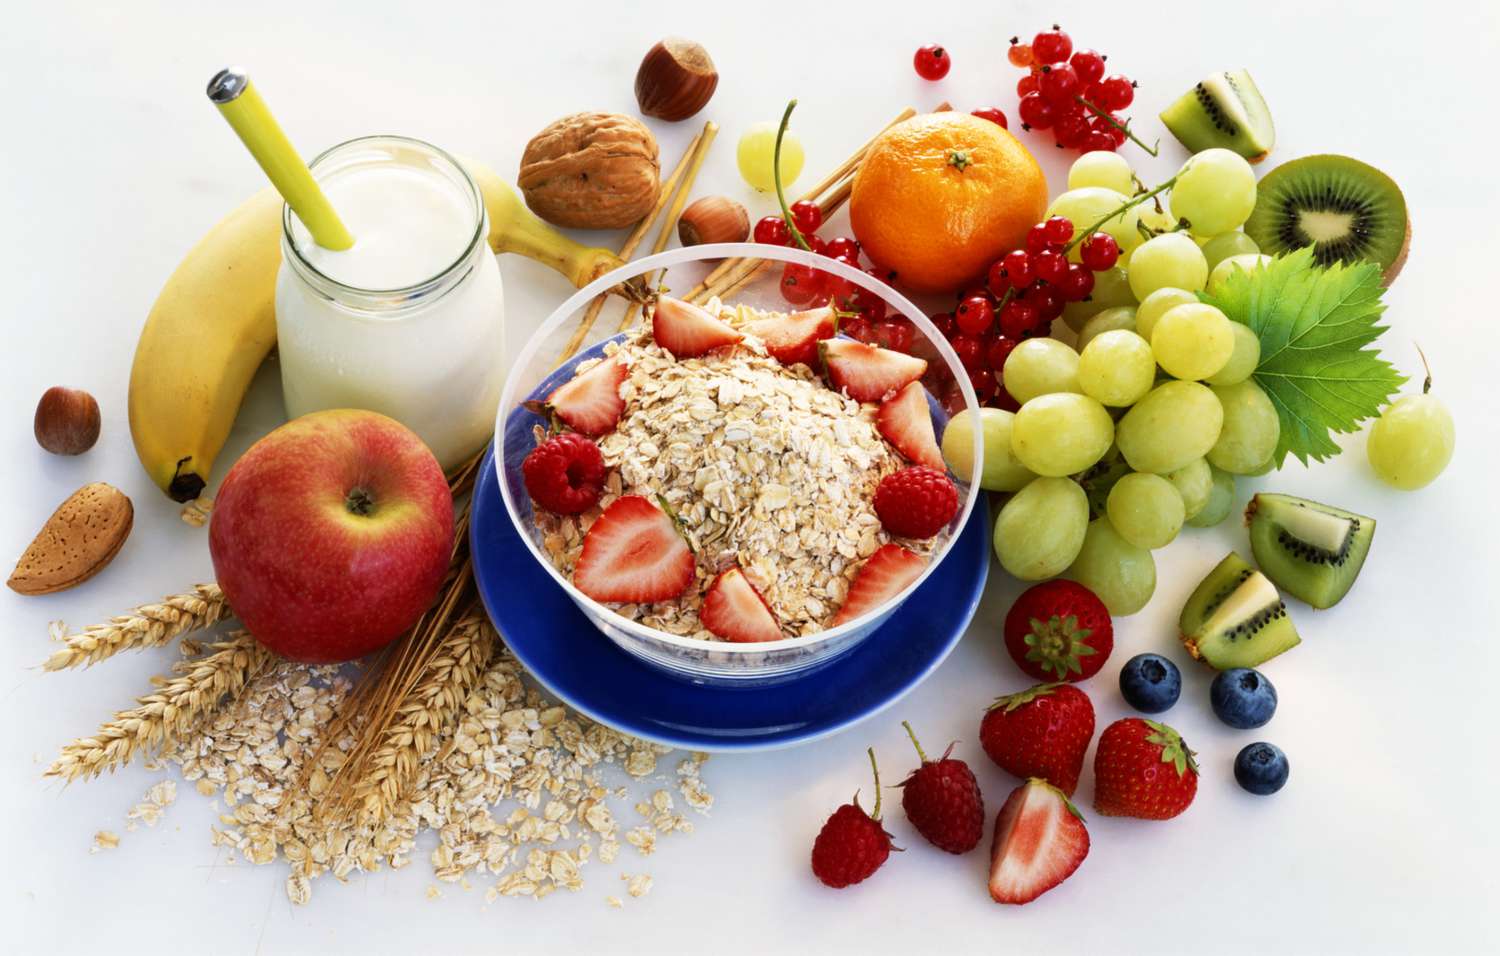 gezonde ontbijtproducten, waaronder fruit en havermout, op een wit tafelblad